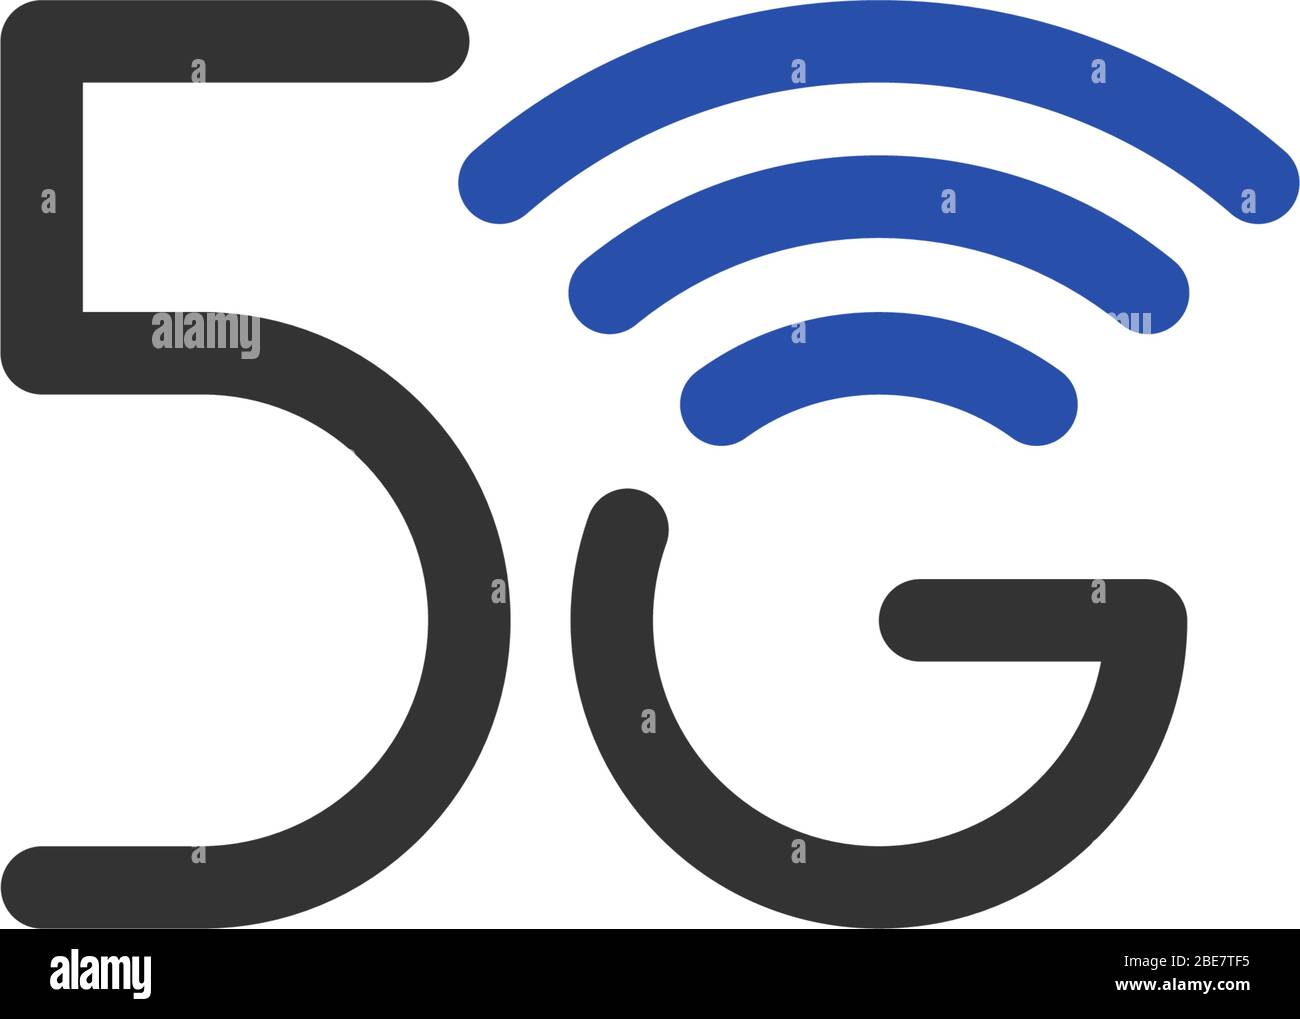 Geschäftssymbol für 5G-Netzanschluss. Symbol für Wireless Internet-Technologie der fünften Generation. Vektor 5 G Kommunikation Emblem blau Design-Vorlage isoliert Stock Vektor